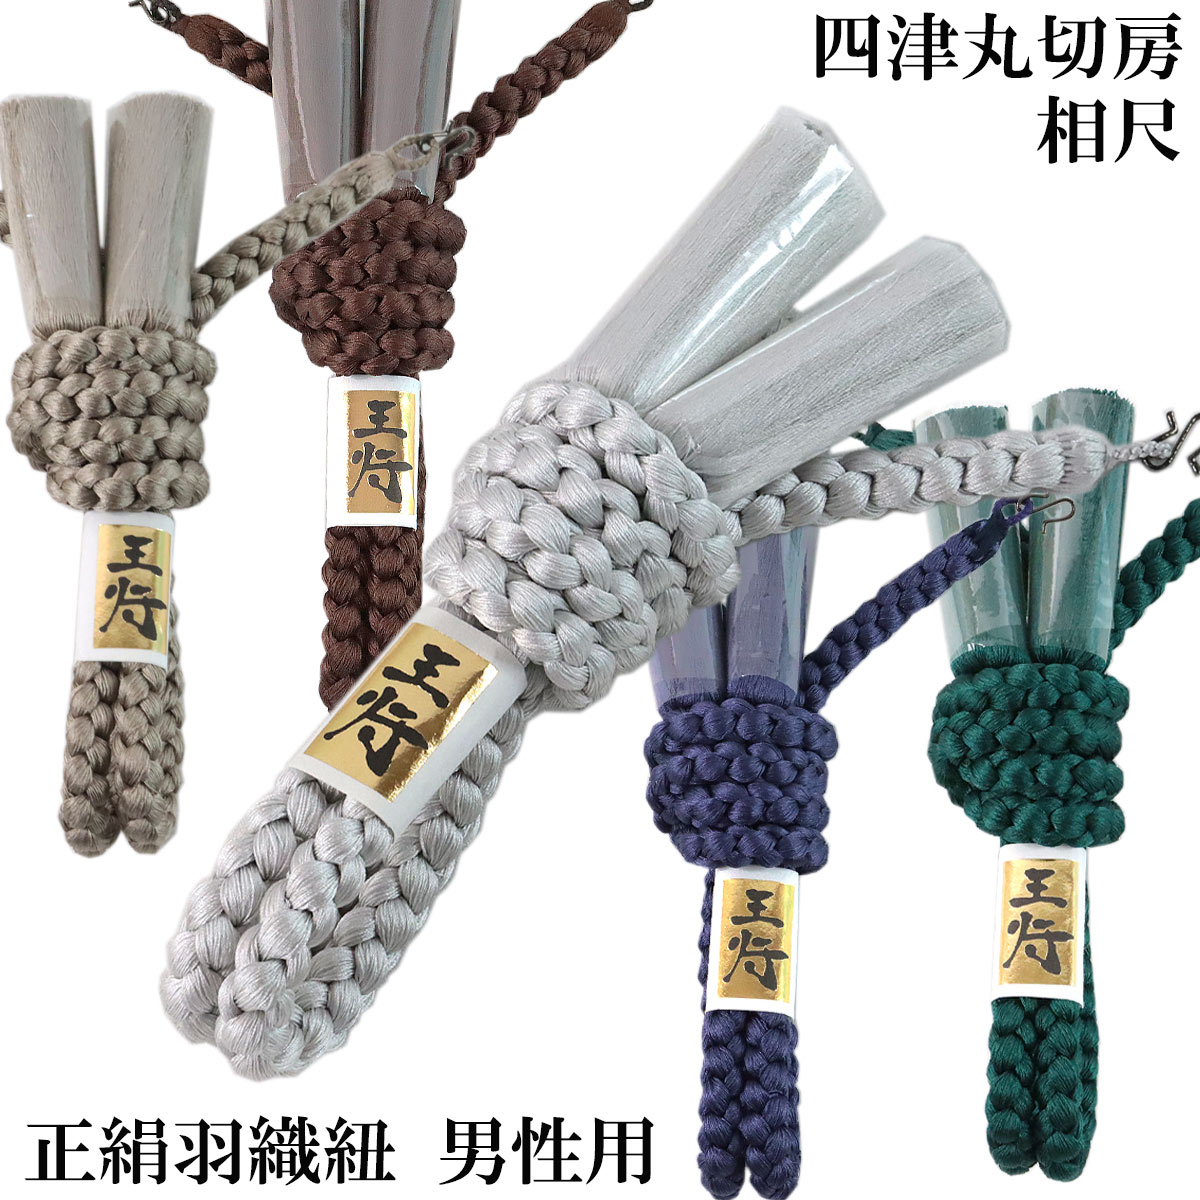 羽織紐 正絹 男性用 -1- 相尺 四津丸切房 丸組 絹100% 日本製 S環付き 全10色